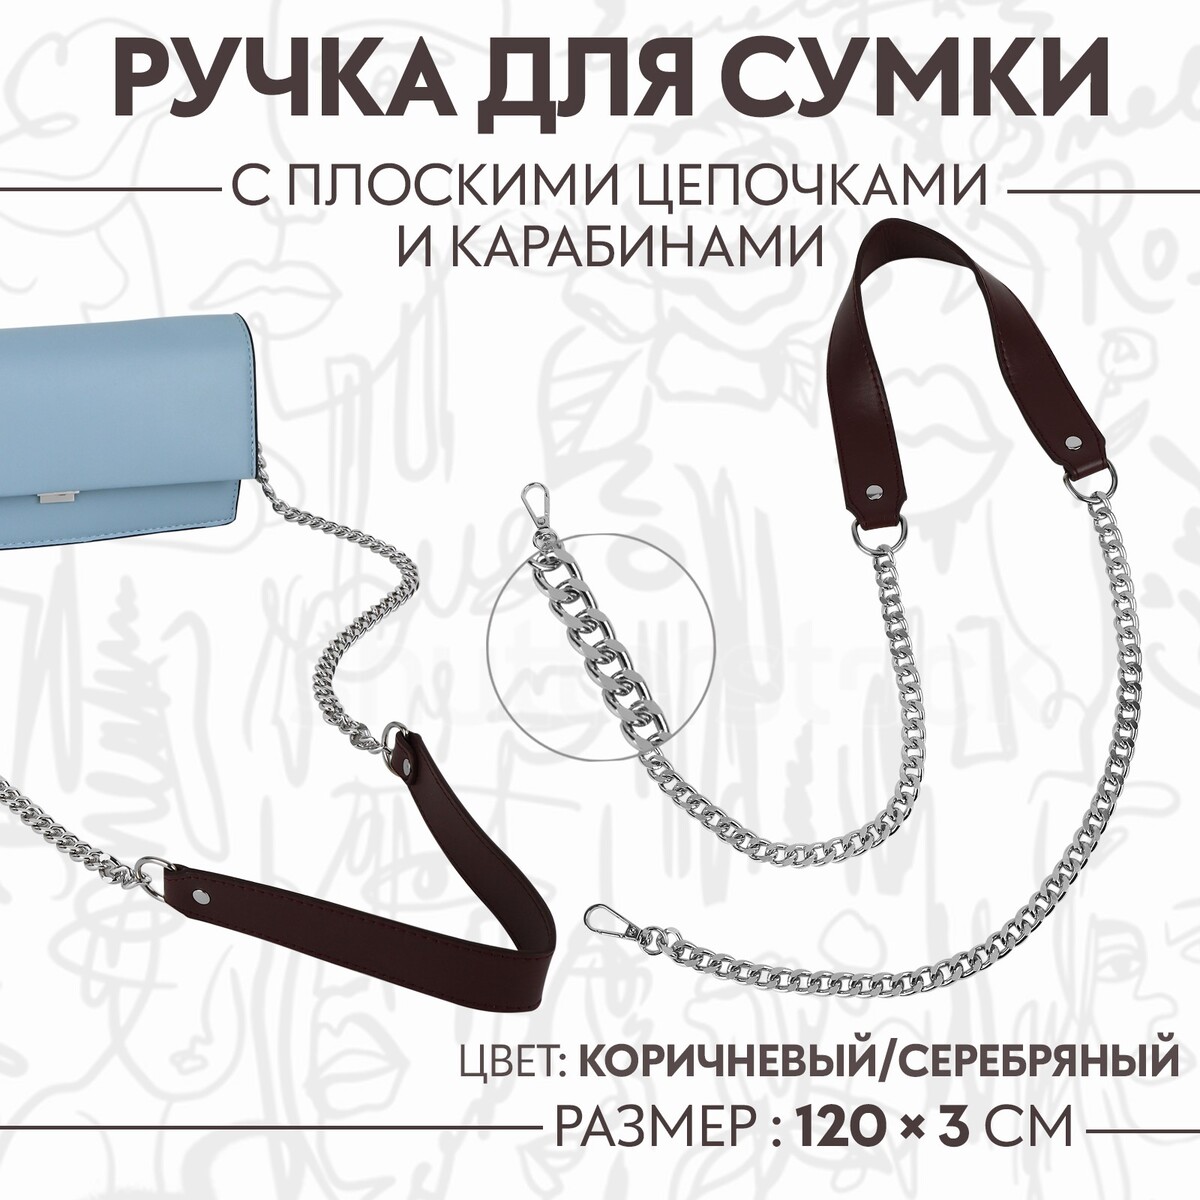 Ручка для сумки, с плоскими цепочками и карабинами, 120 × 3 см, цвет коричневый/серебряный ручка для сумки с карабинами 60 ± 1 см × 2 см светло коричневый